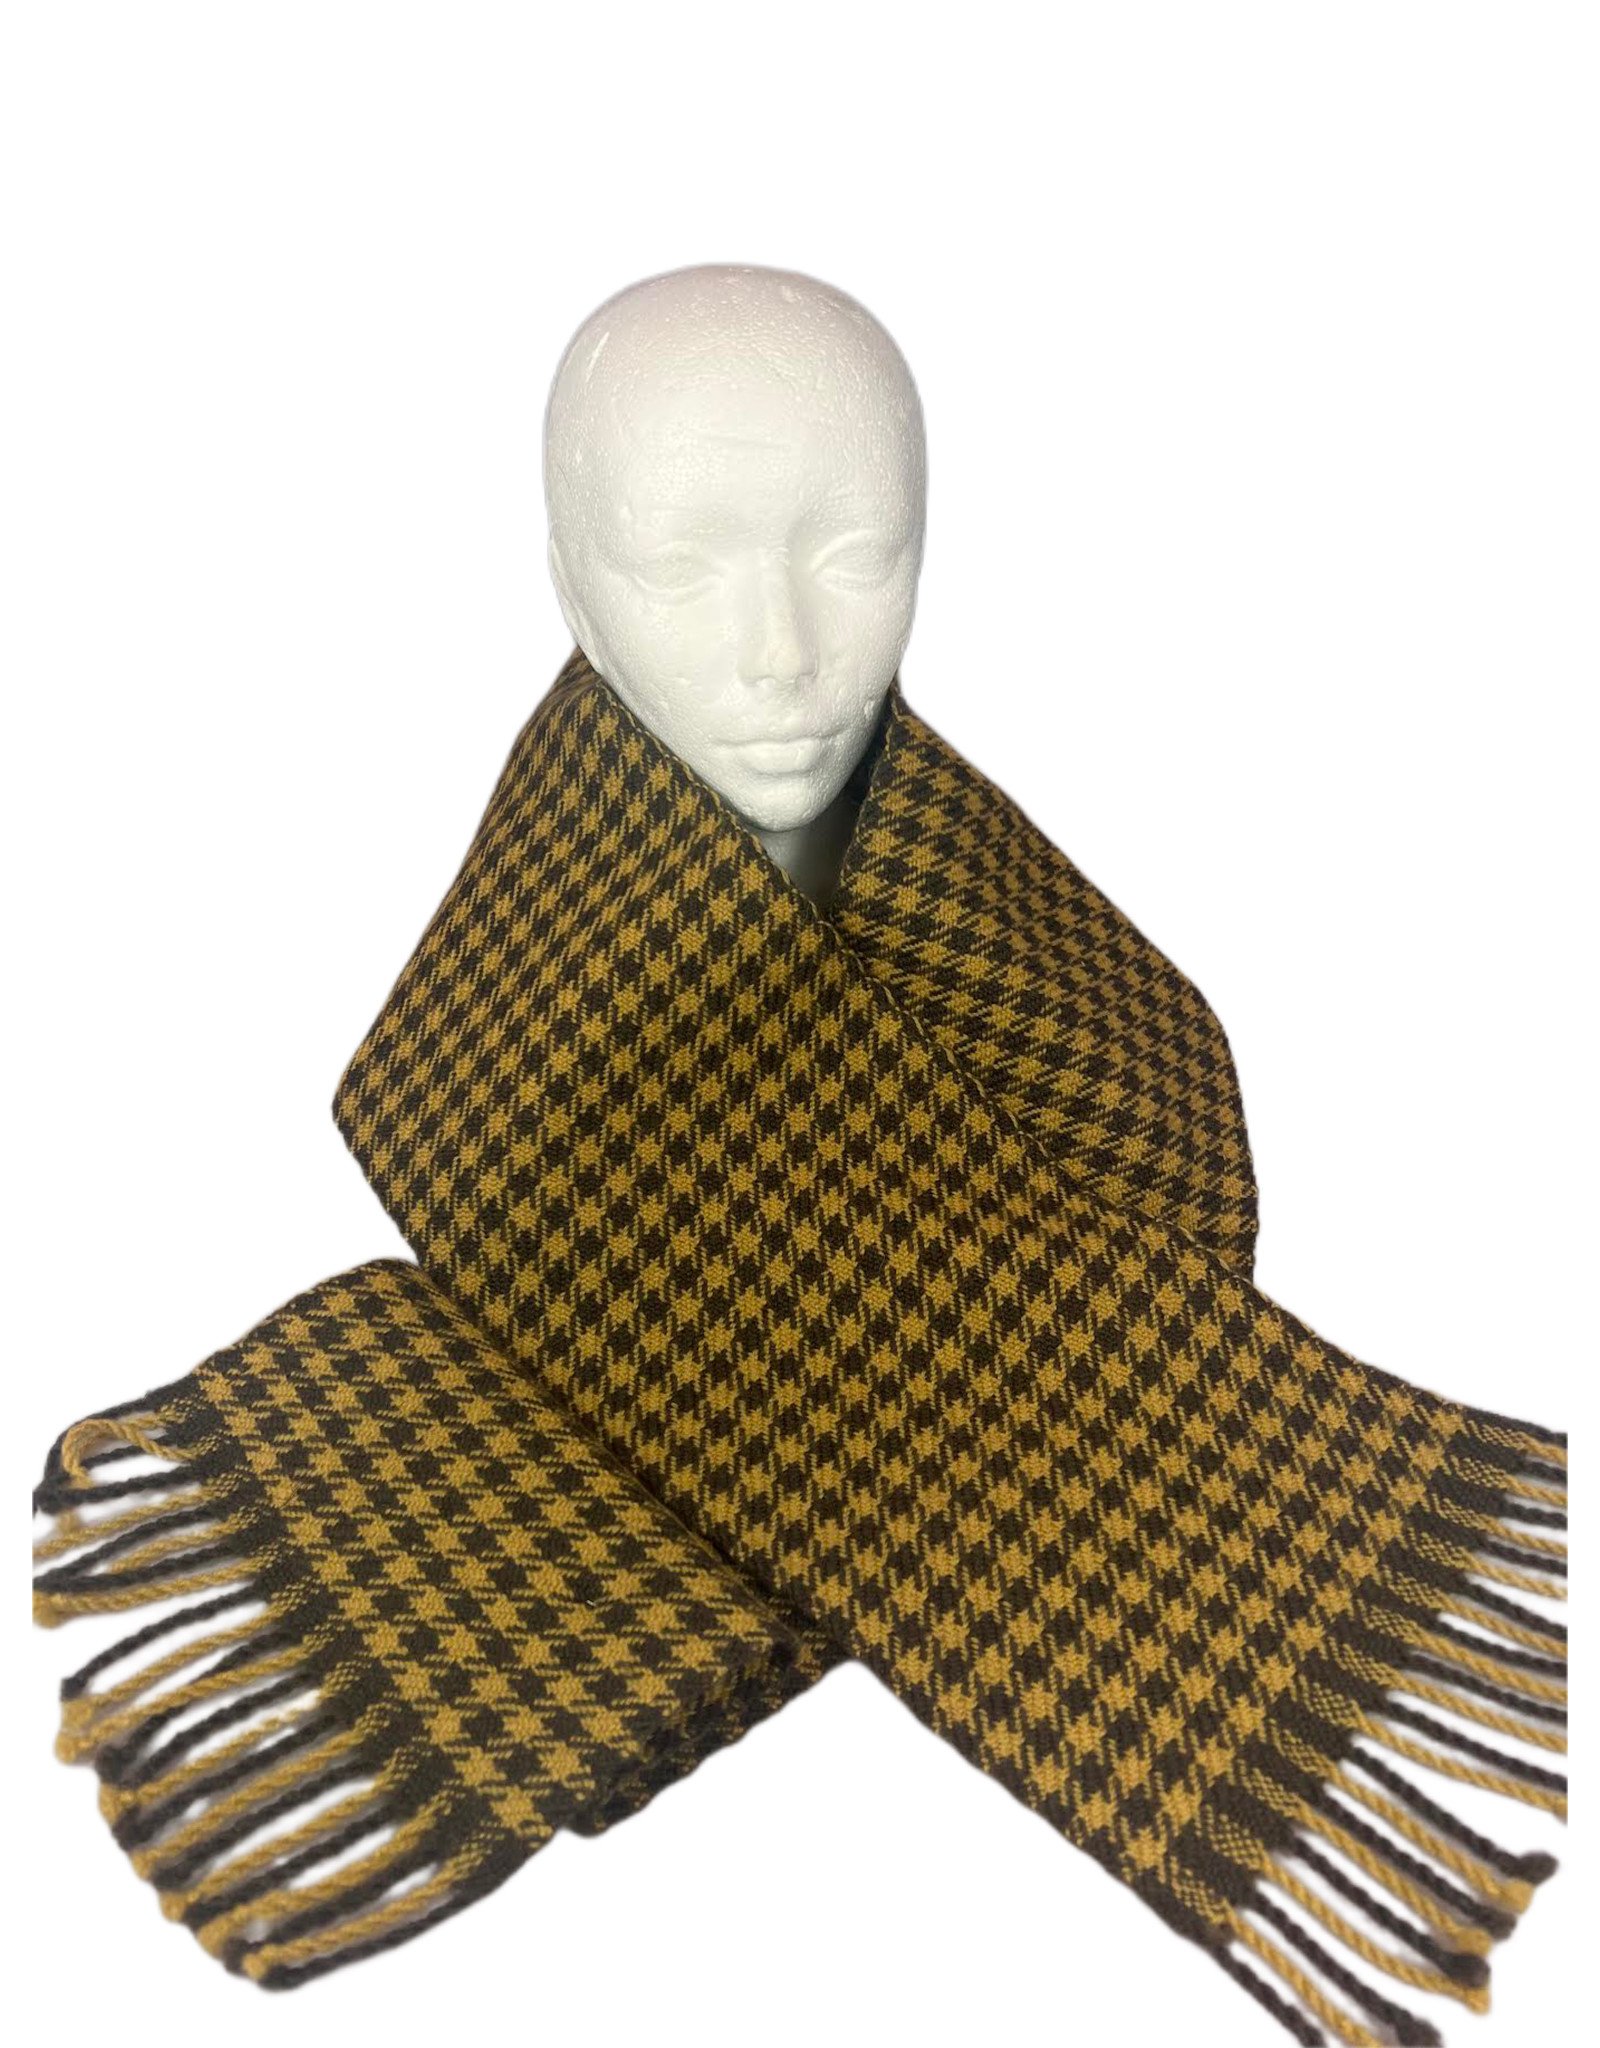 Jane Alderdice  Wool scarf, gold and brown, by Jane Alderdice